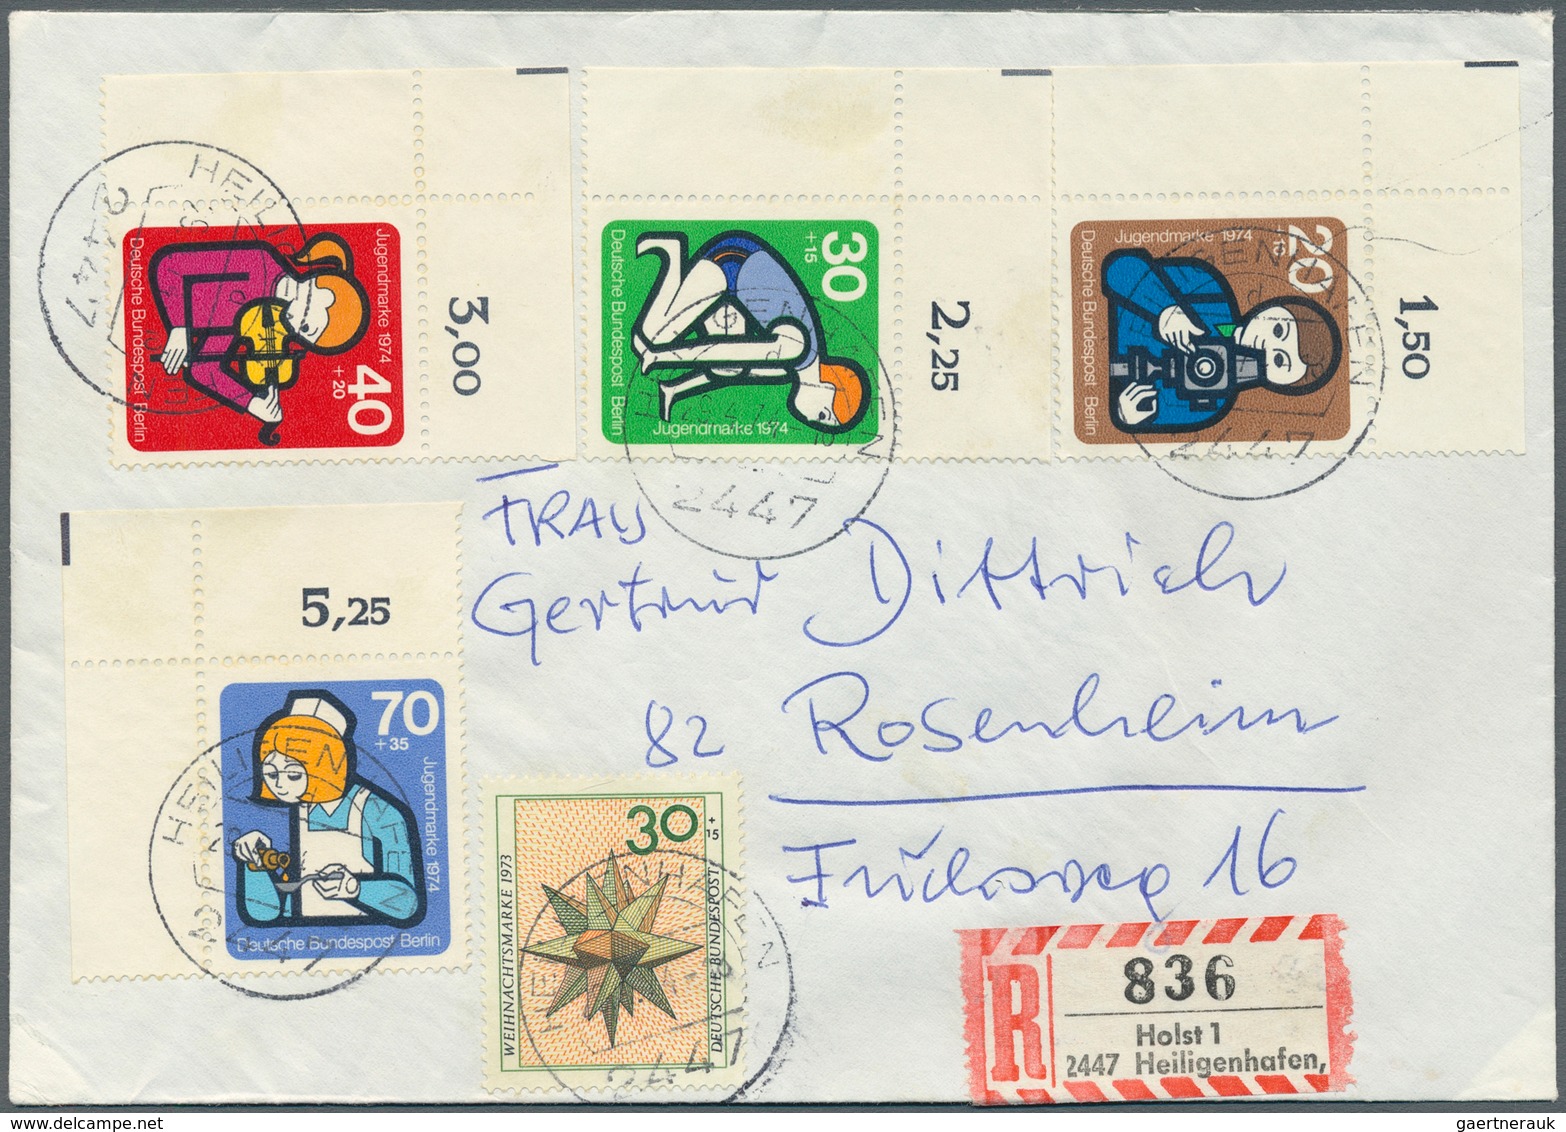 32523 Berlin: 1980/1991 (ca.), vielseitiger Bestand von über 250 Briefen und Karten aus Firmen-Korresponde